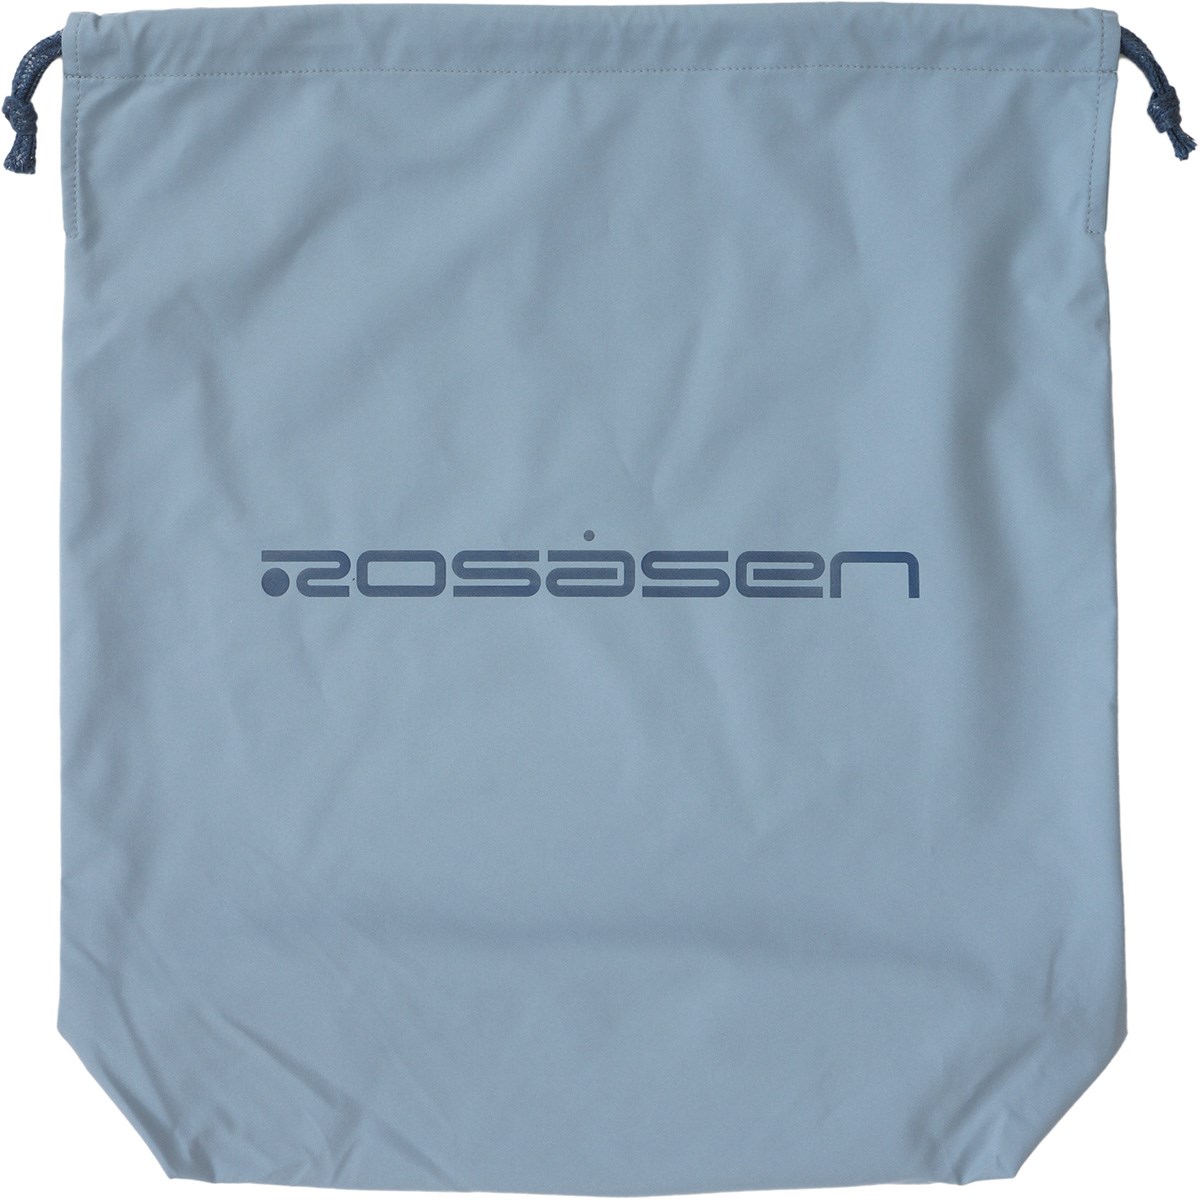 dショッピング |ロサーセン ROSASEN 2WAY レインウェア 50(L) ブルー